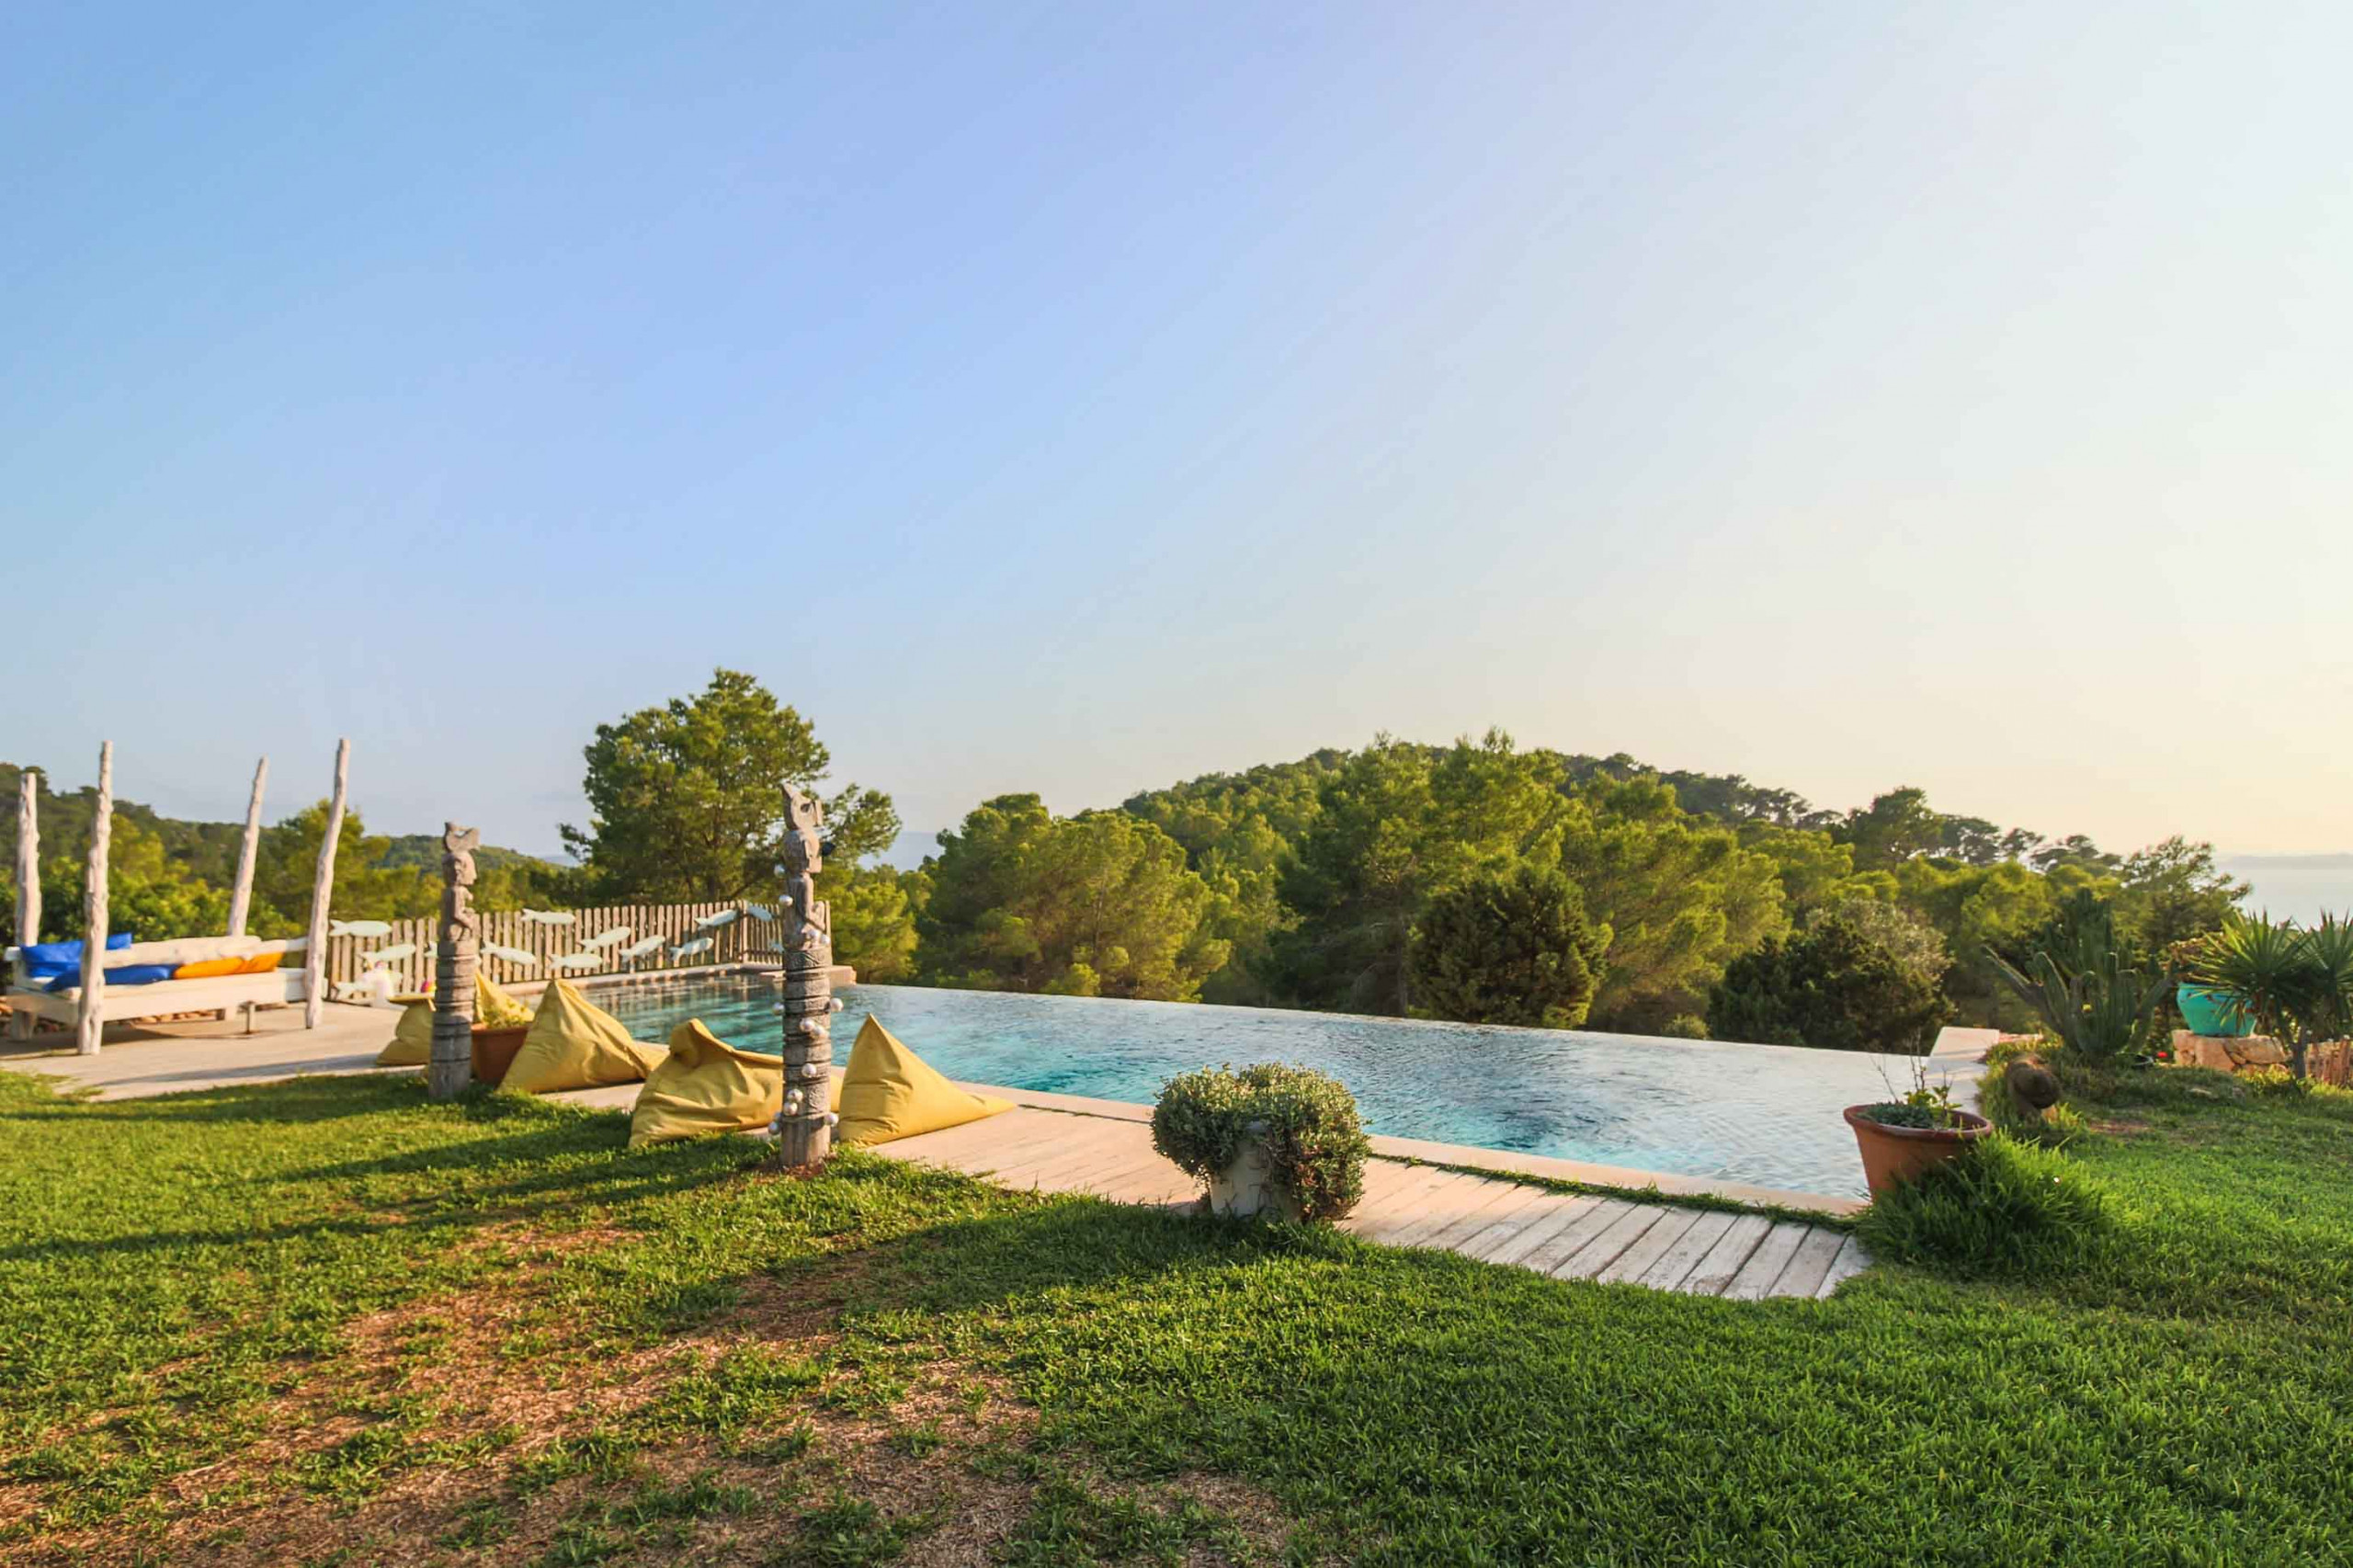 Pool and views from Villa Sarahmuk in Ibiza